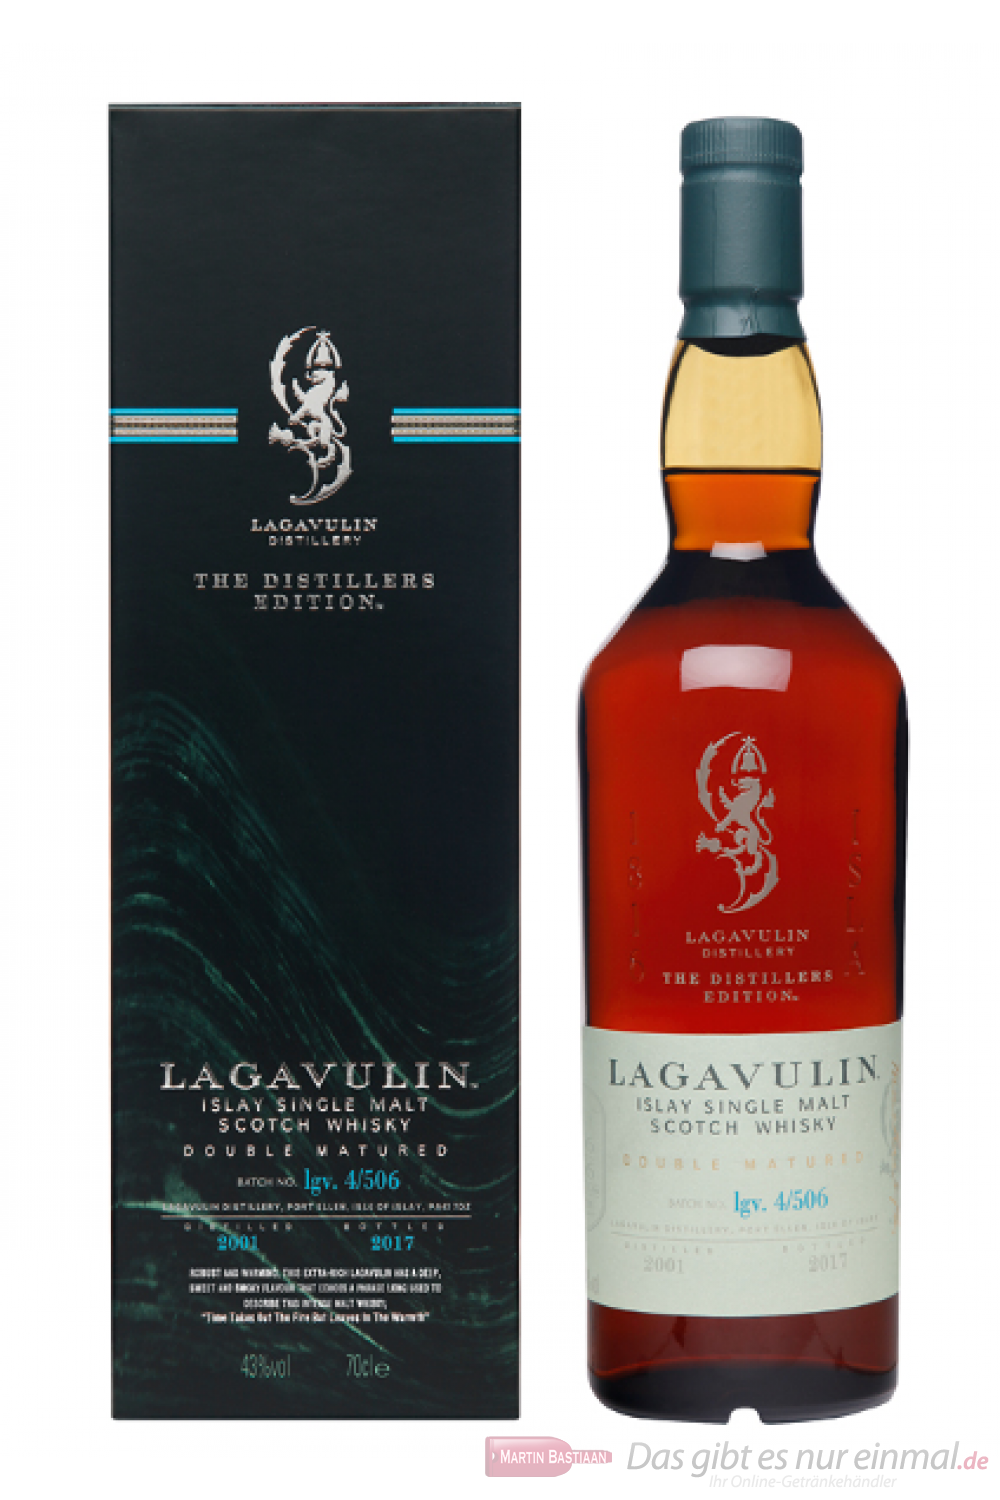 Lagavulin Distillers Edition 2017/2001